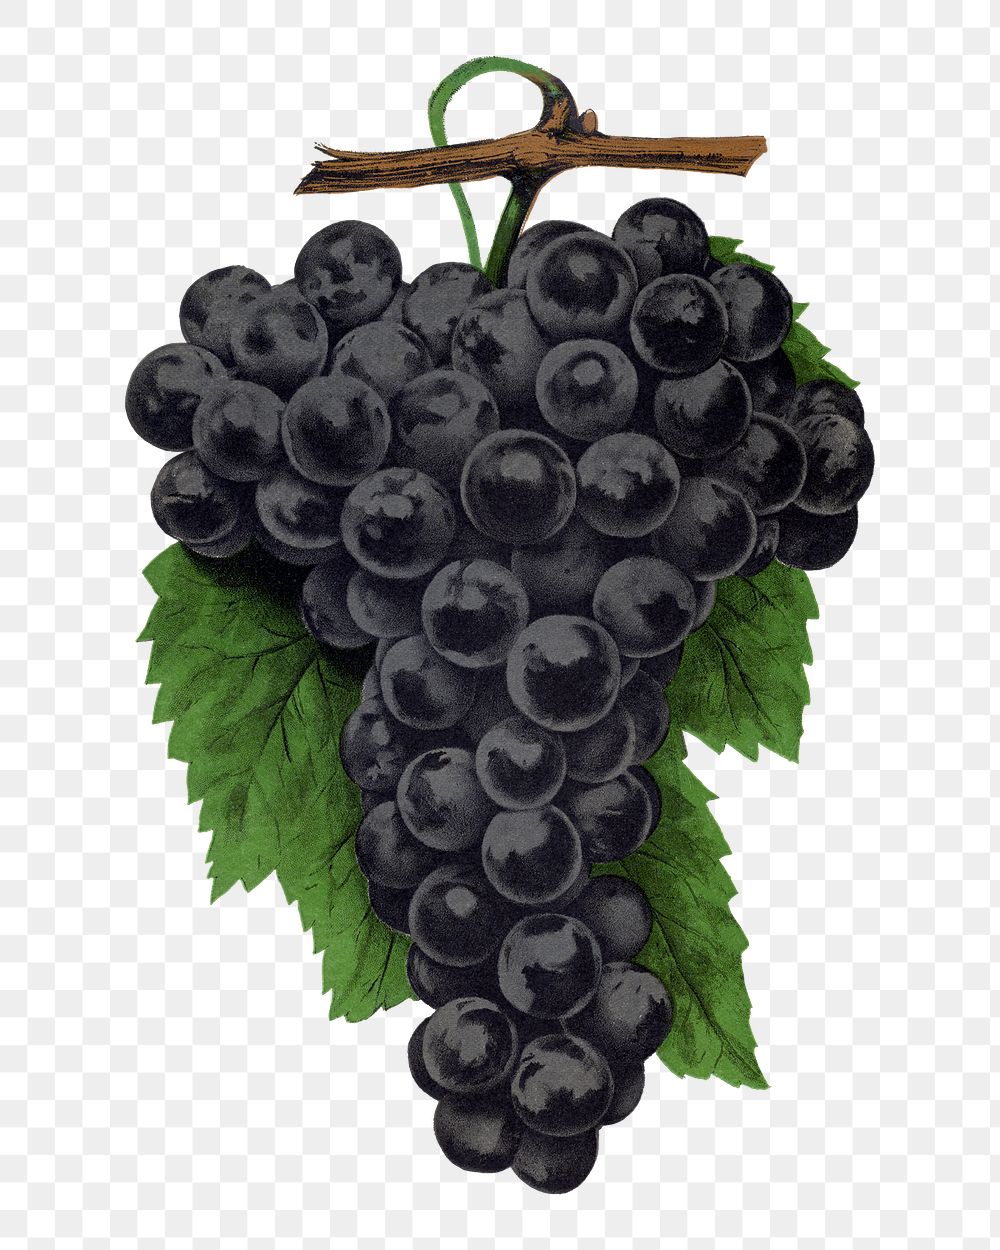 Black grape png sticker, vintage fruit illustration, transparent background